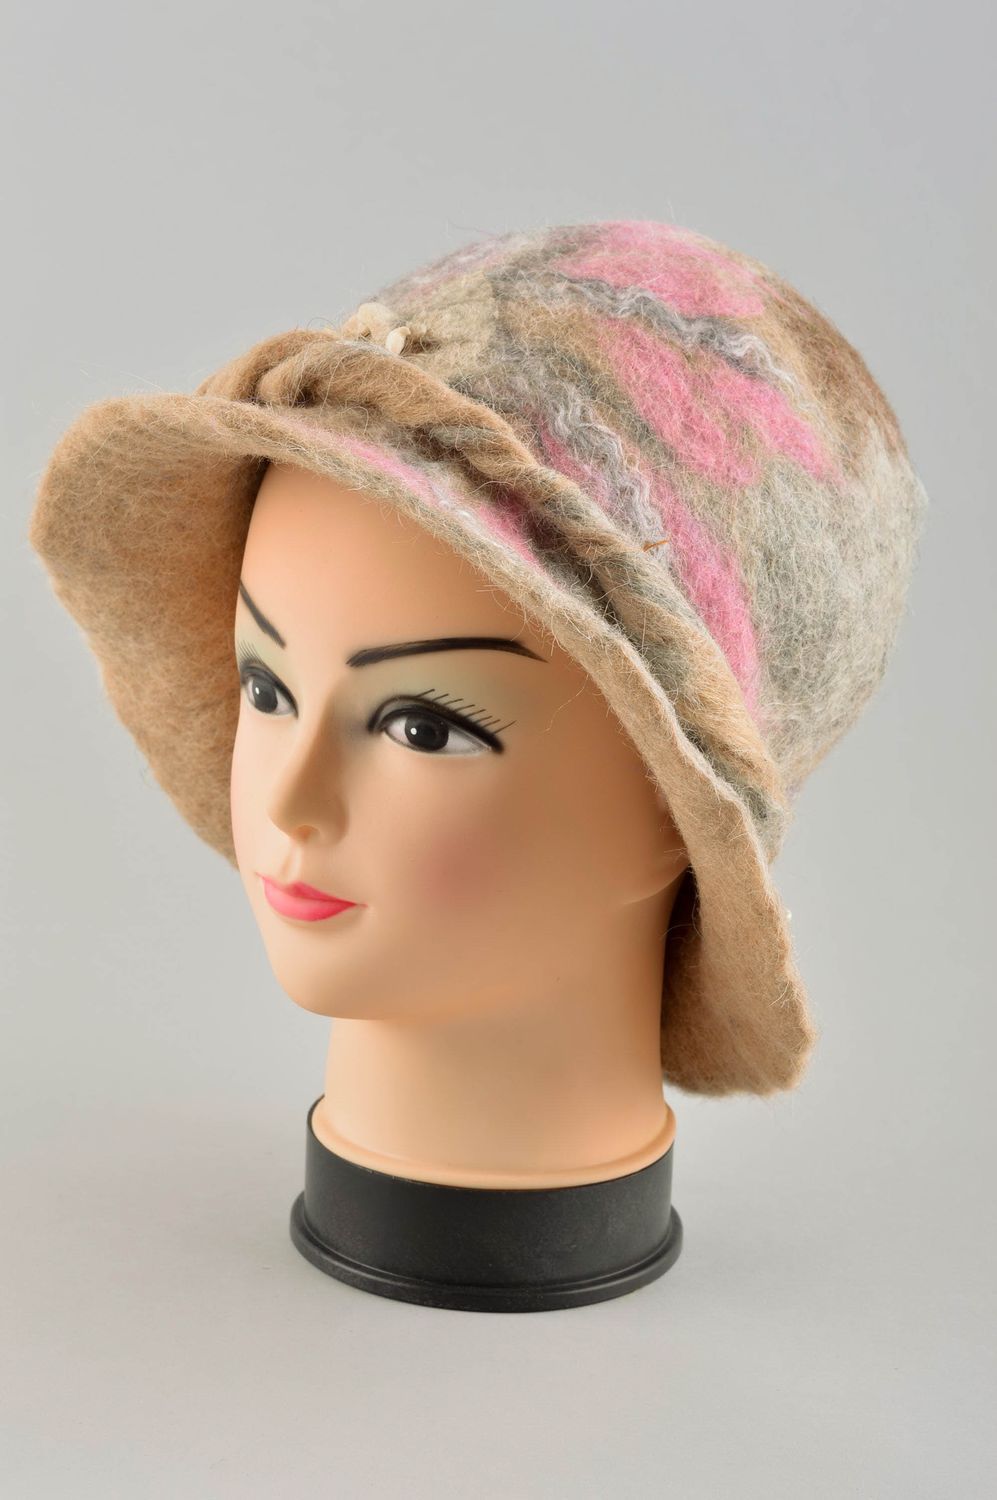 Дамская шляпка ручной работы женский головной убор шляпа с полями модная шляпка фото 2